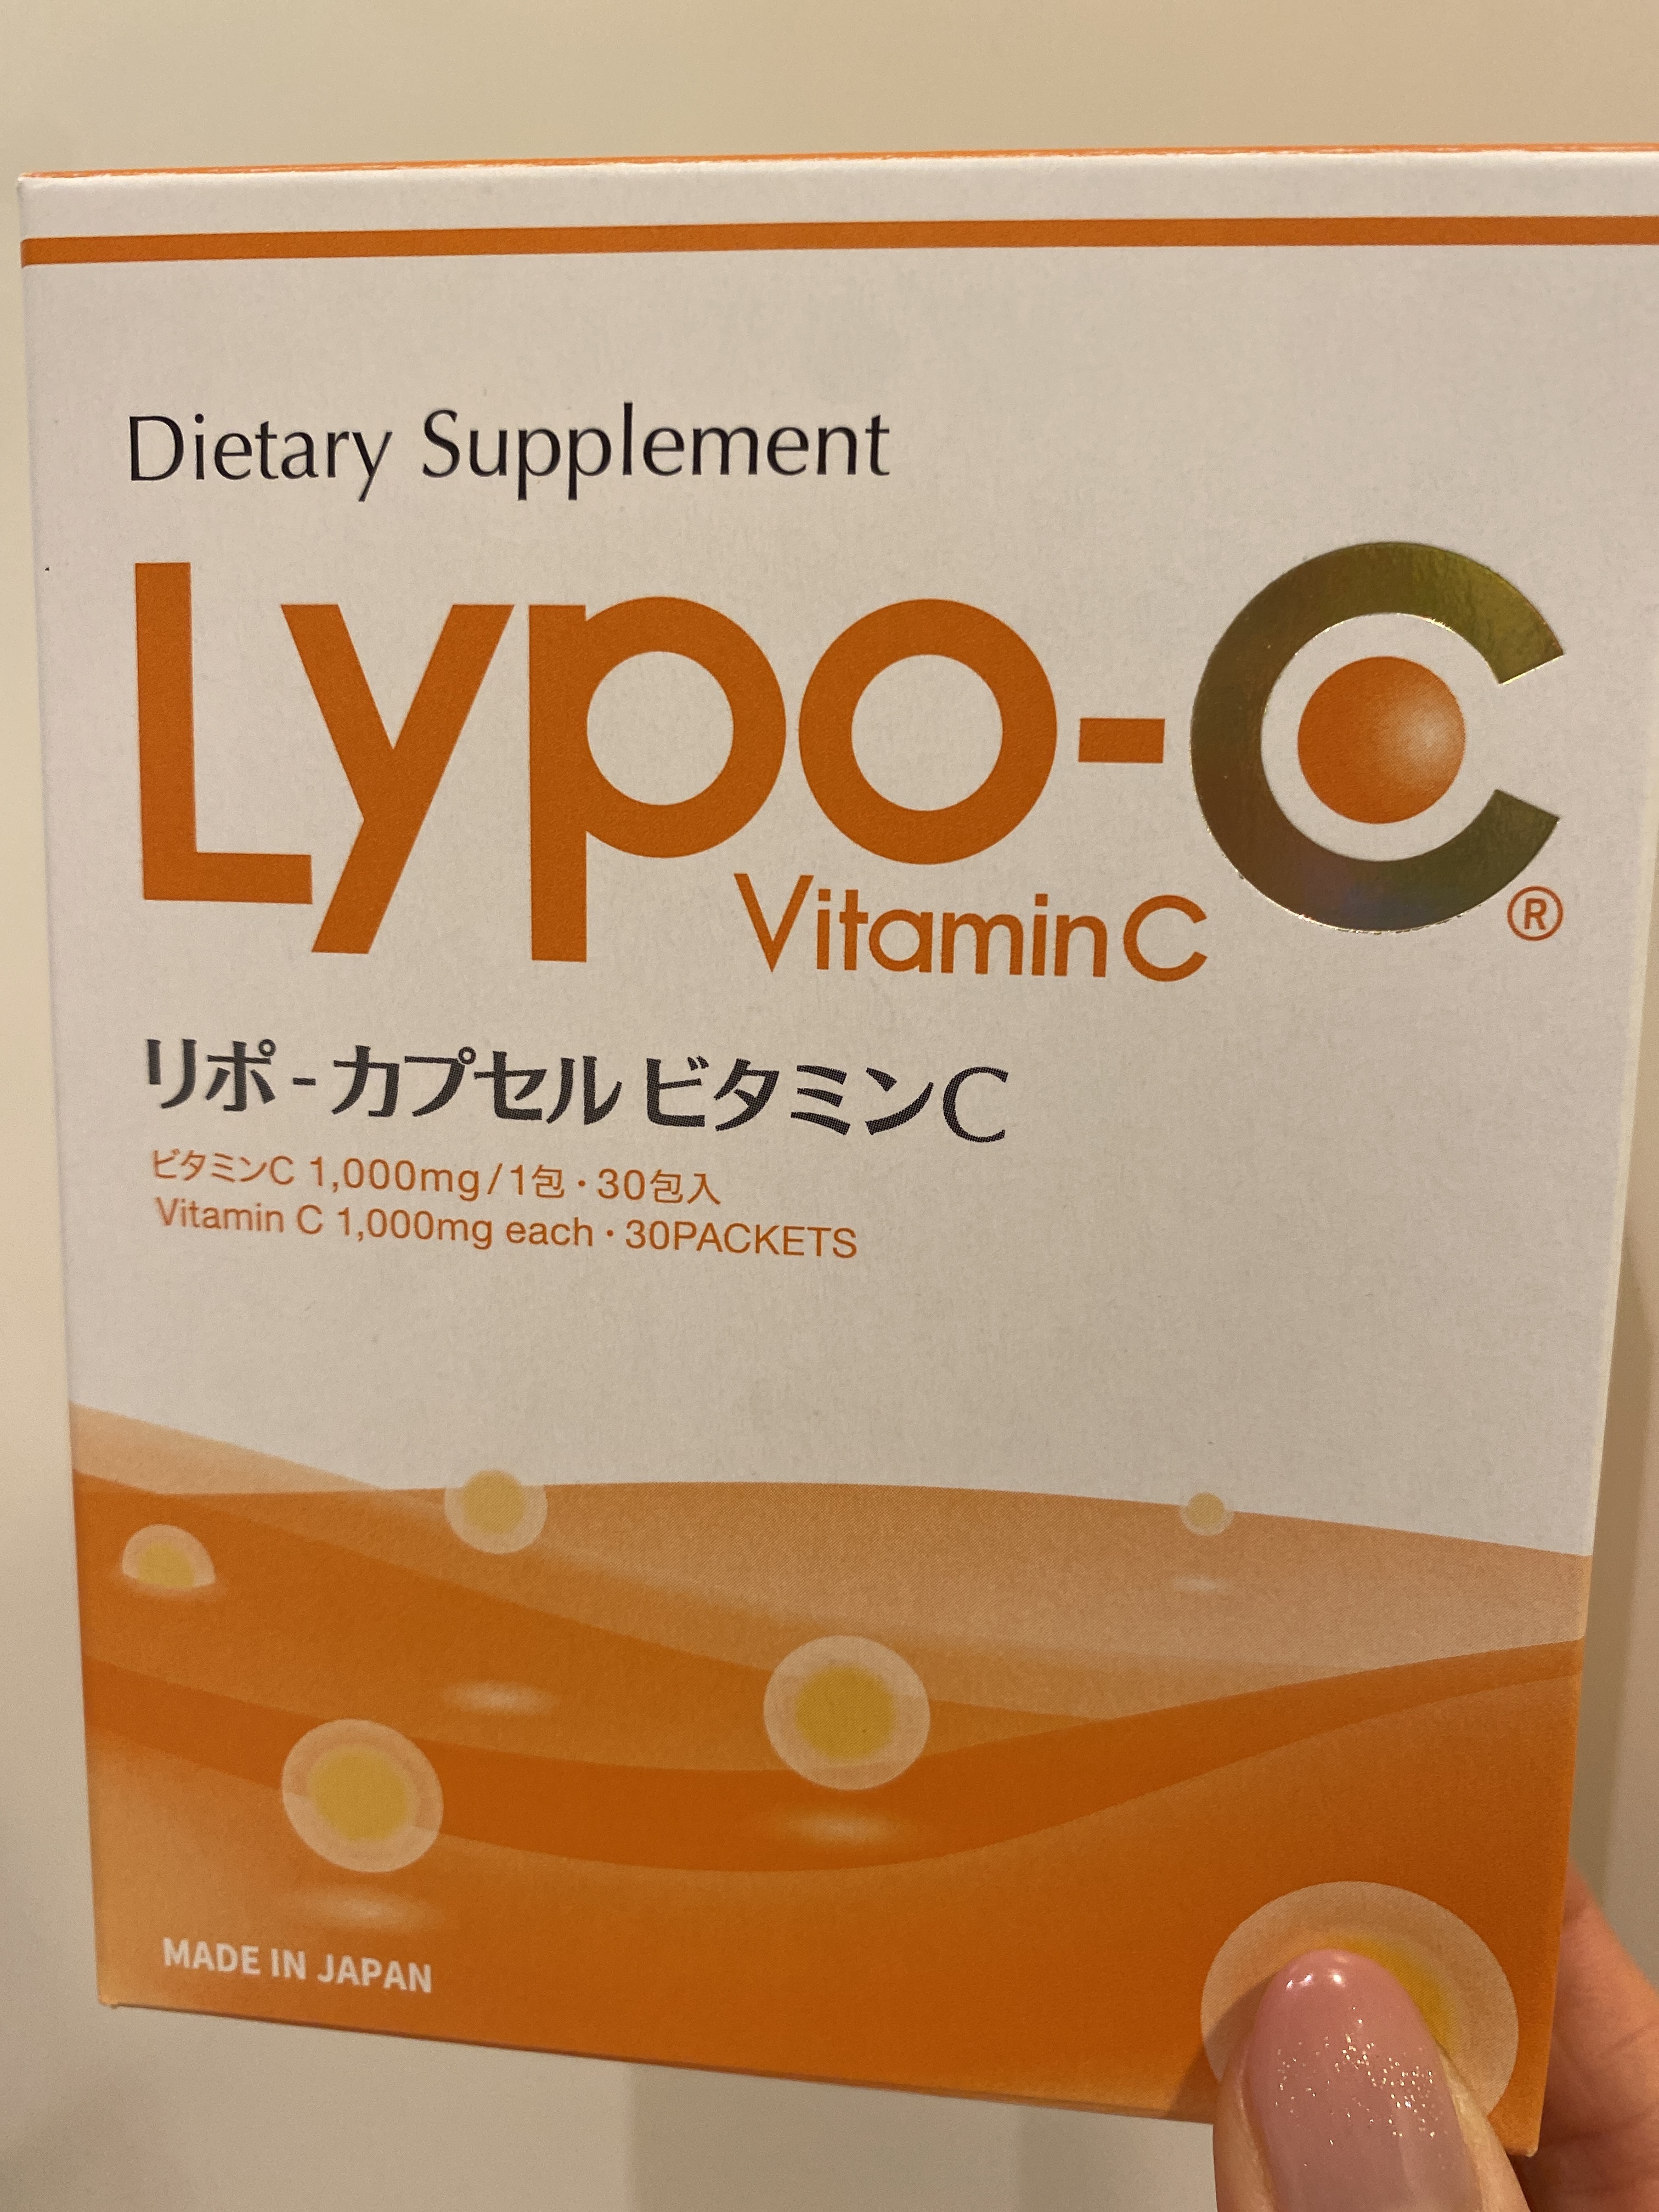 SPIC（スピック） / Lypo-C(リポ・カプセル ビタミンC)の公式商品情報 